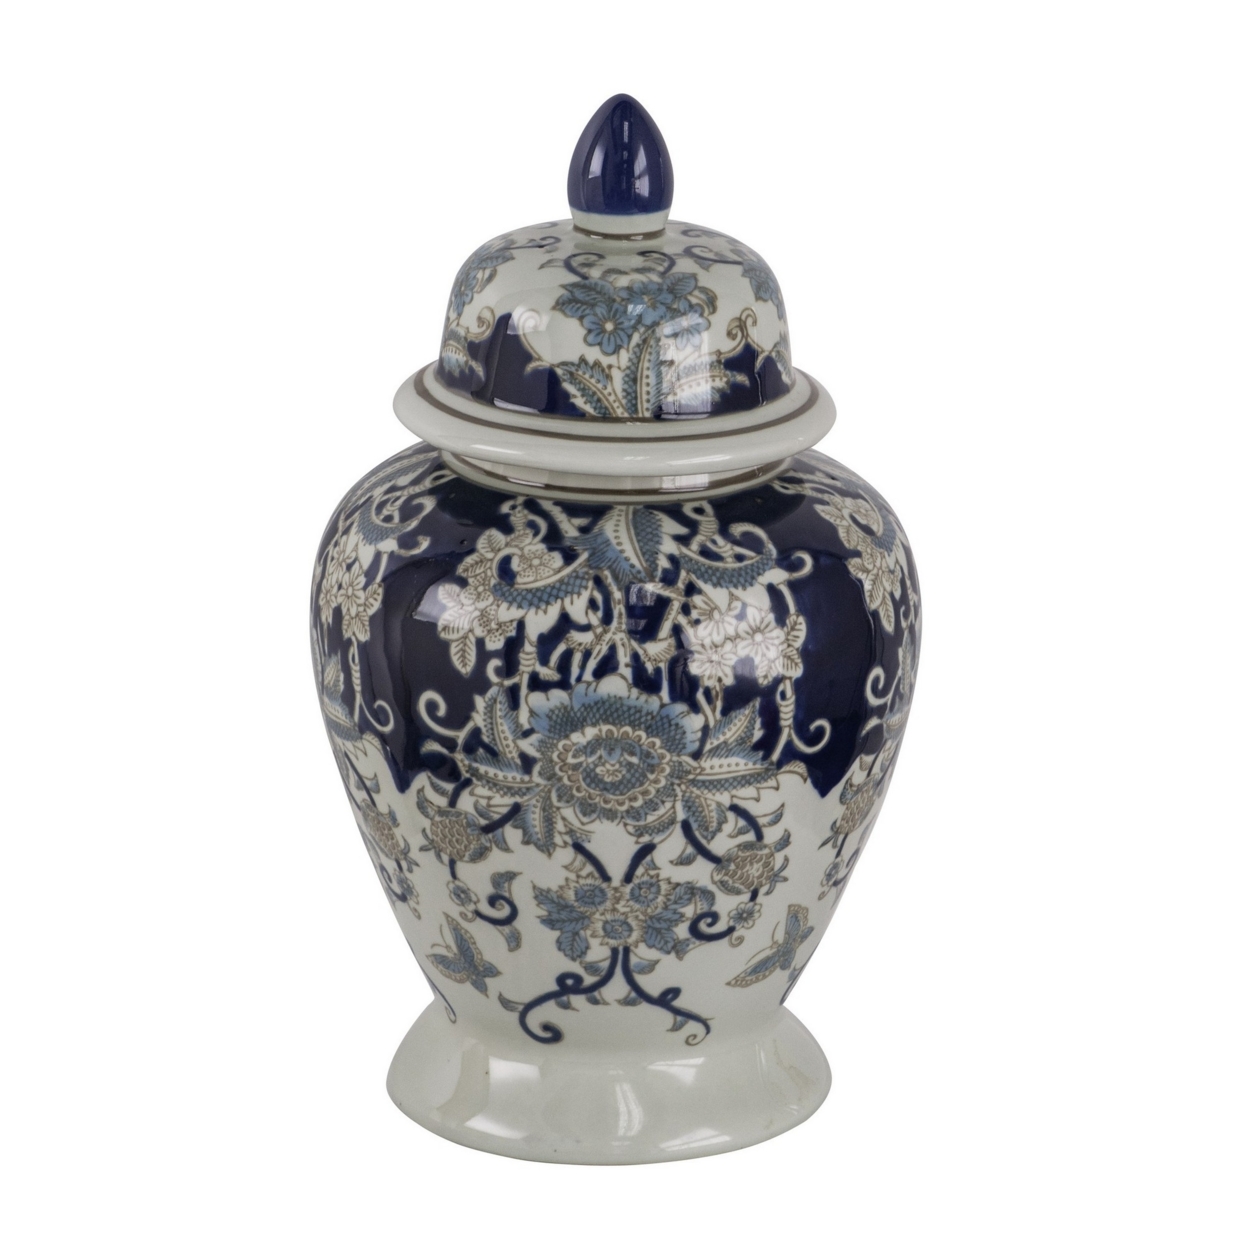 17 Inch Porcelain Ginger Jar With Lid, Vintage Blue And White Flower Design- Saltoro Sherpi